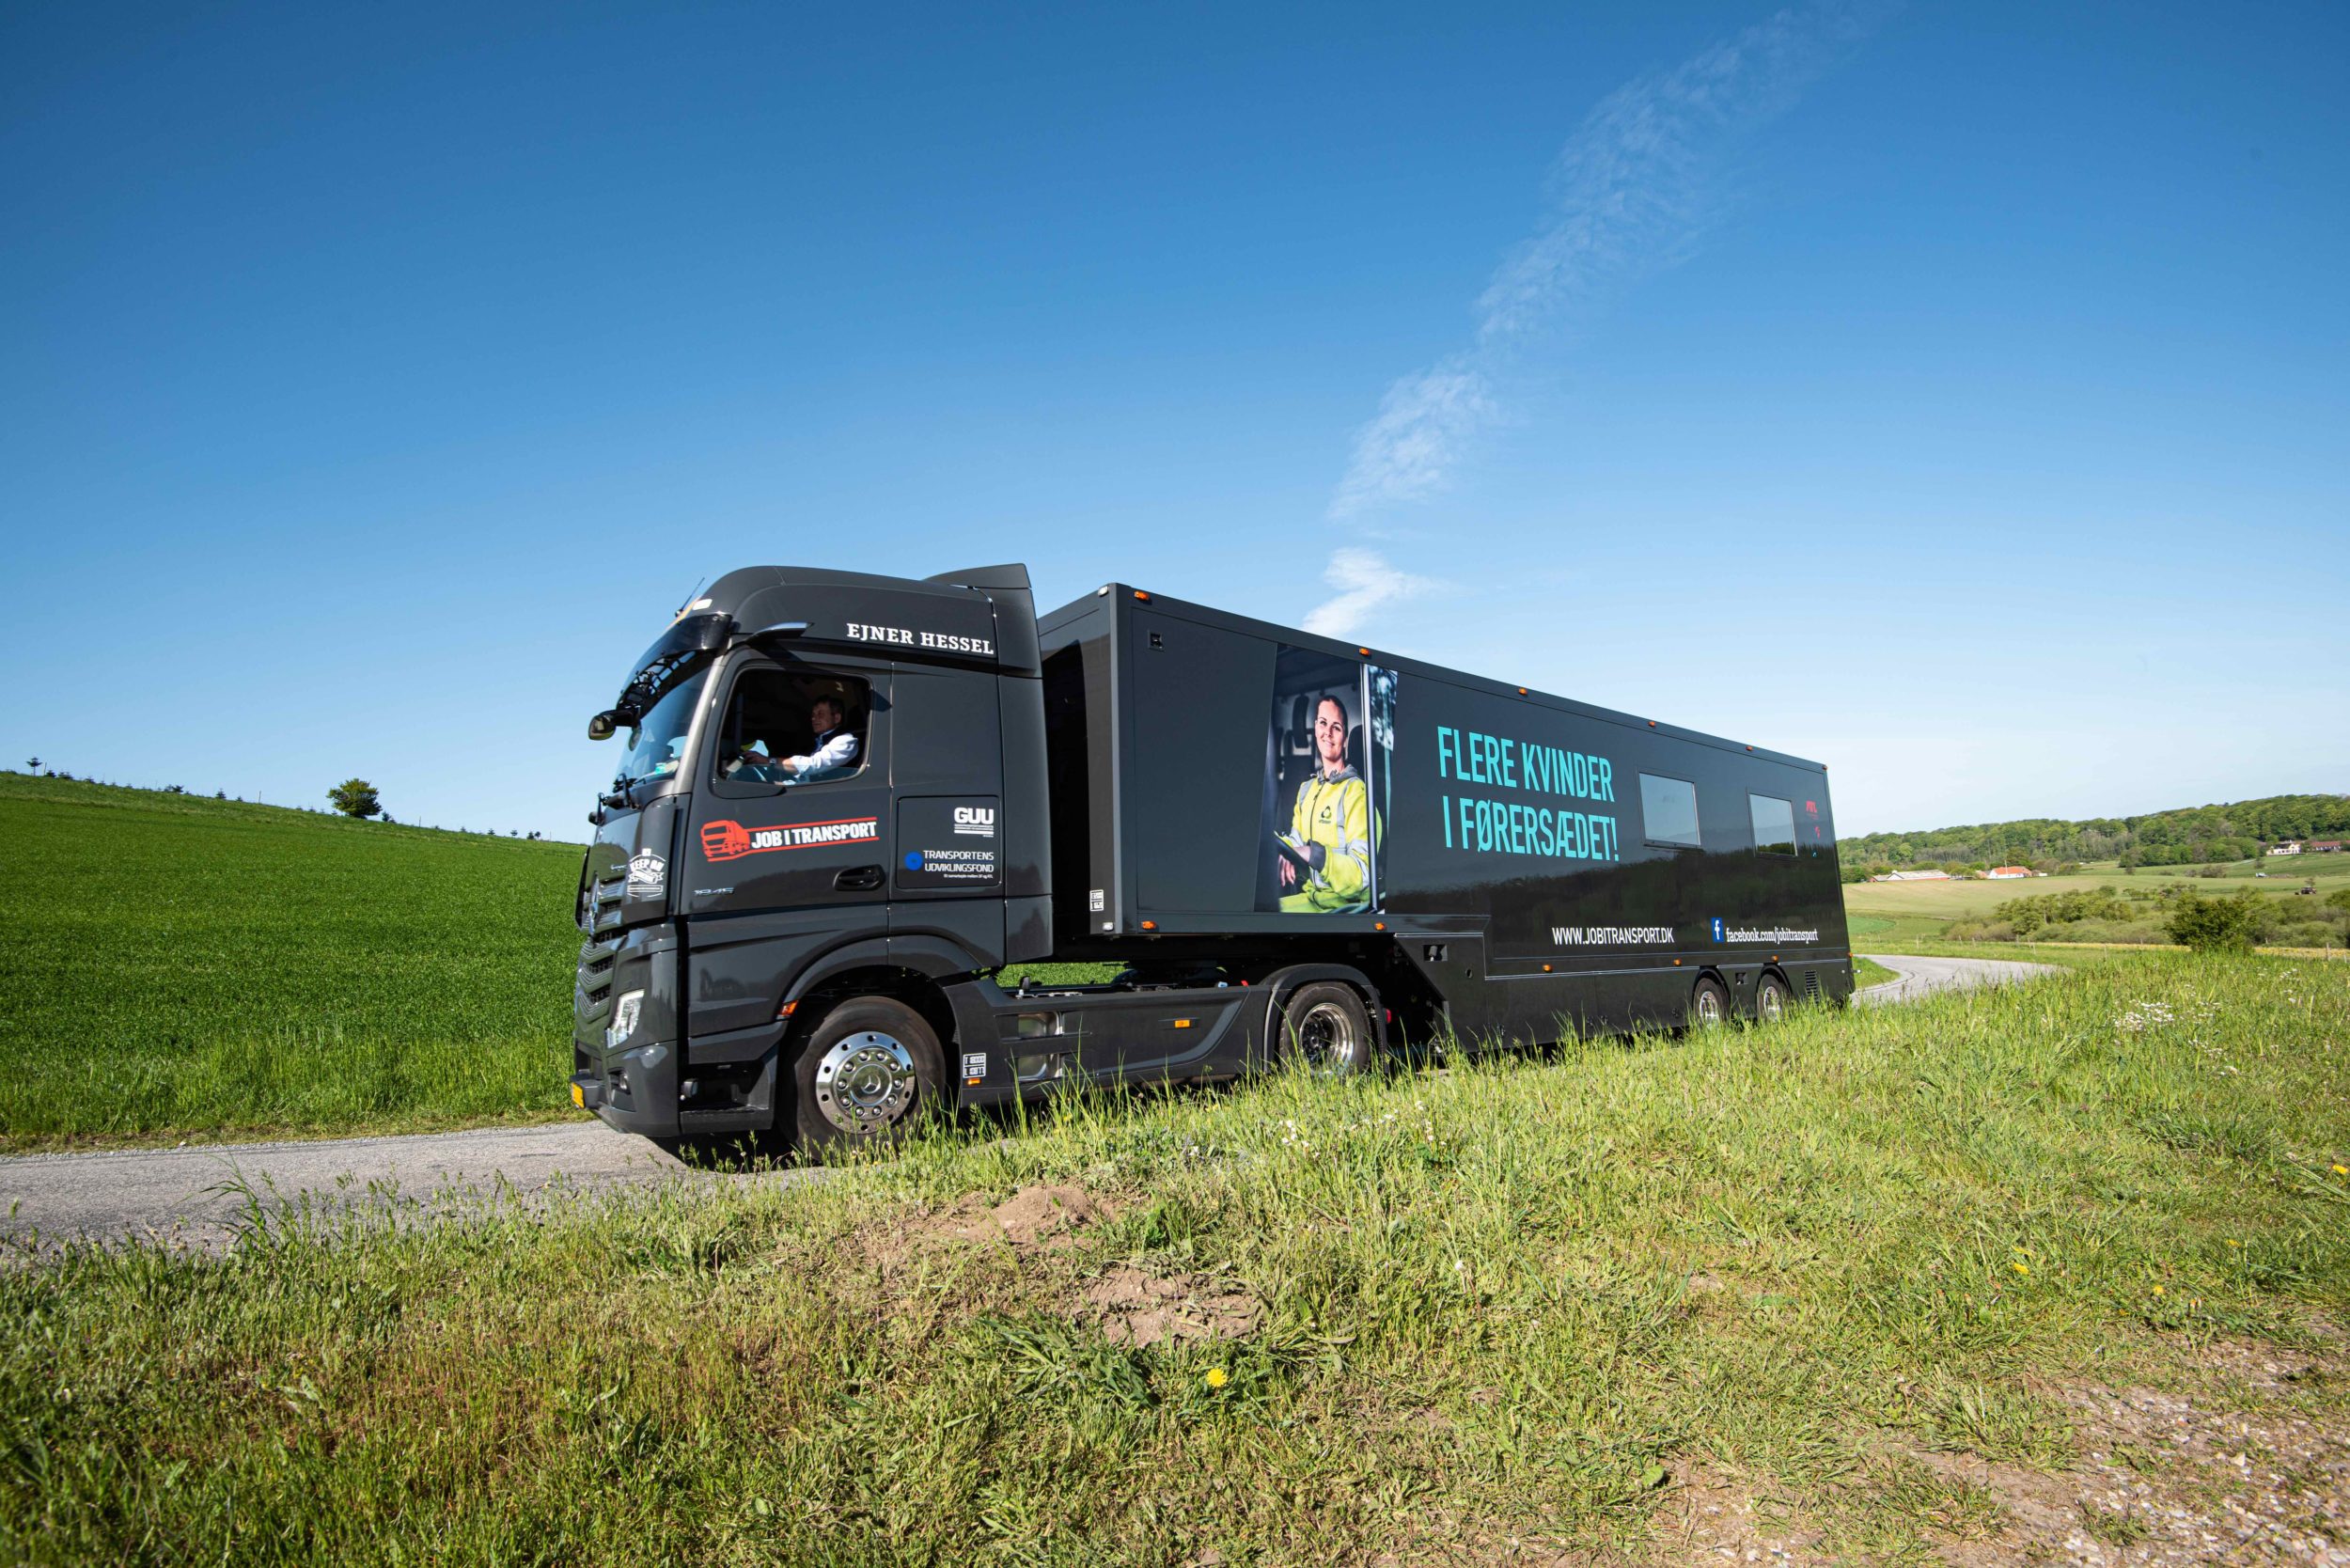 Kæmpe-truck på Danmarksturné besøger Slagelse